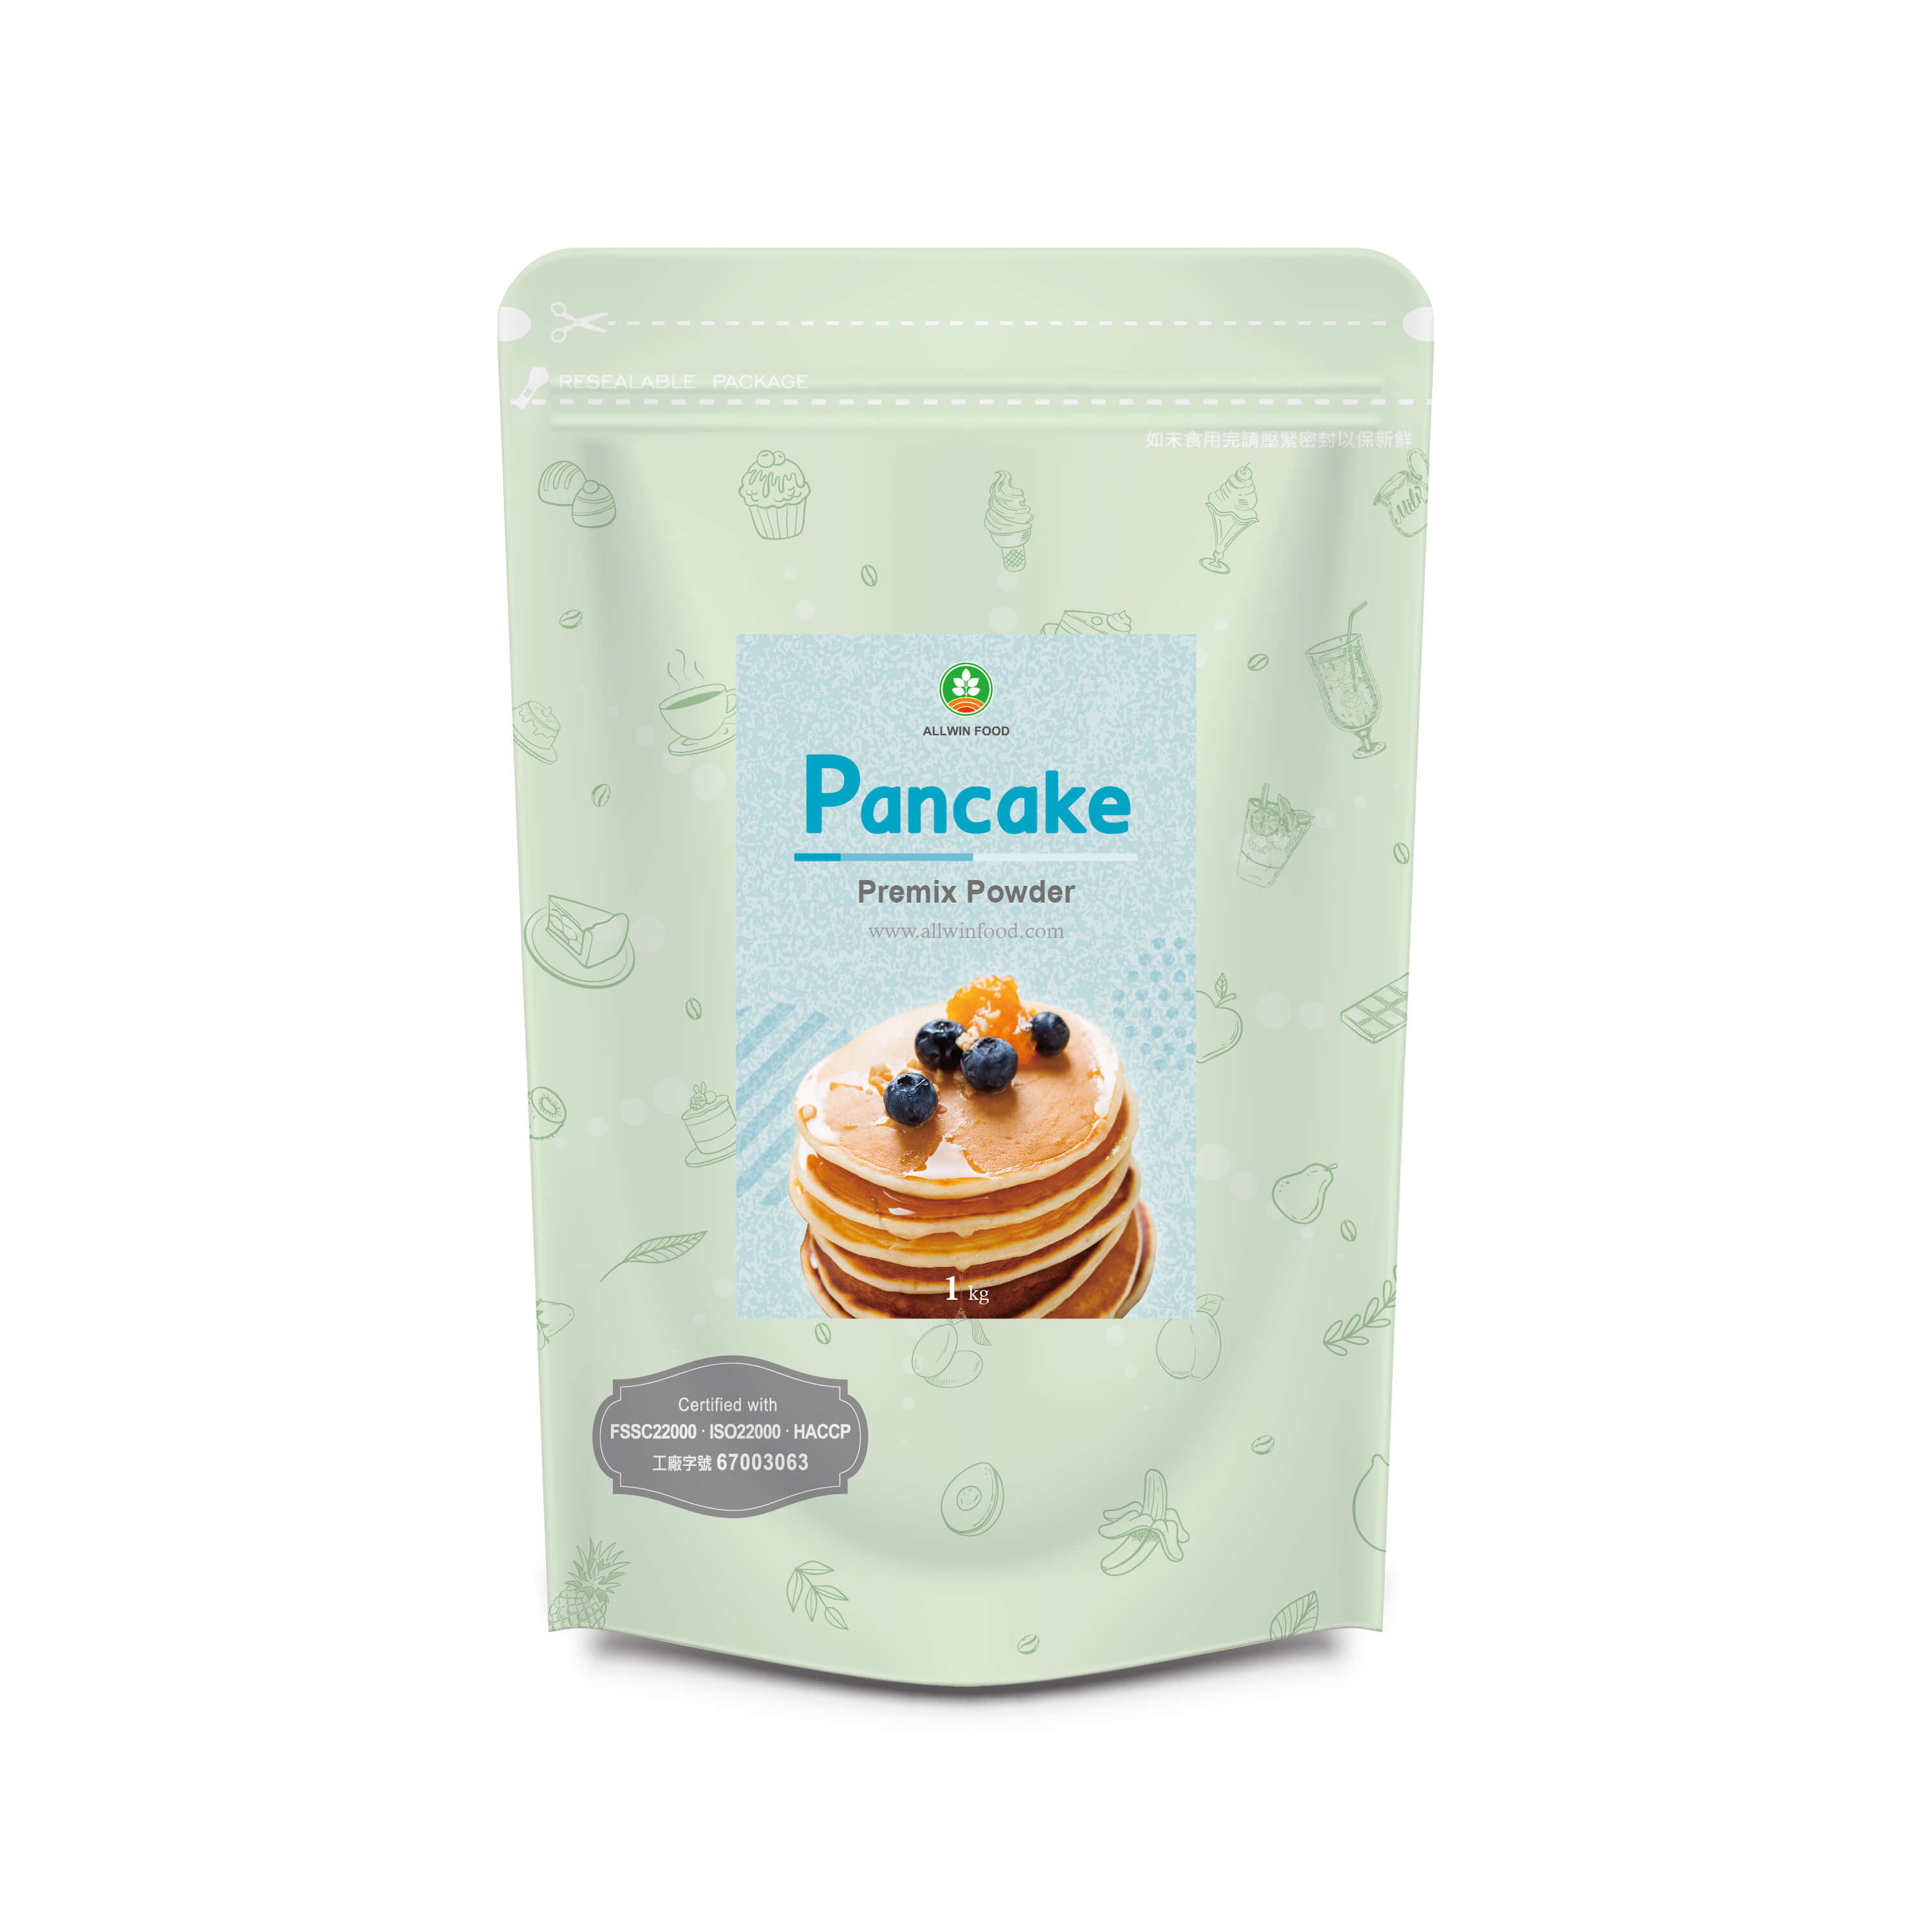 Pancake Premix Powder